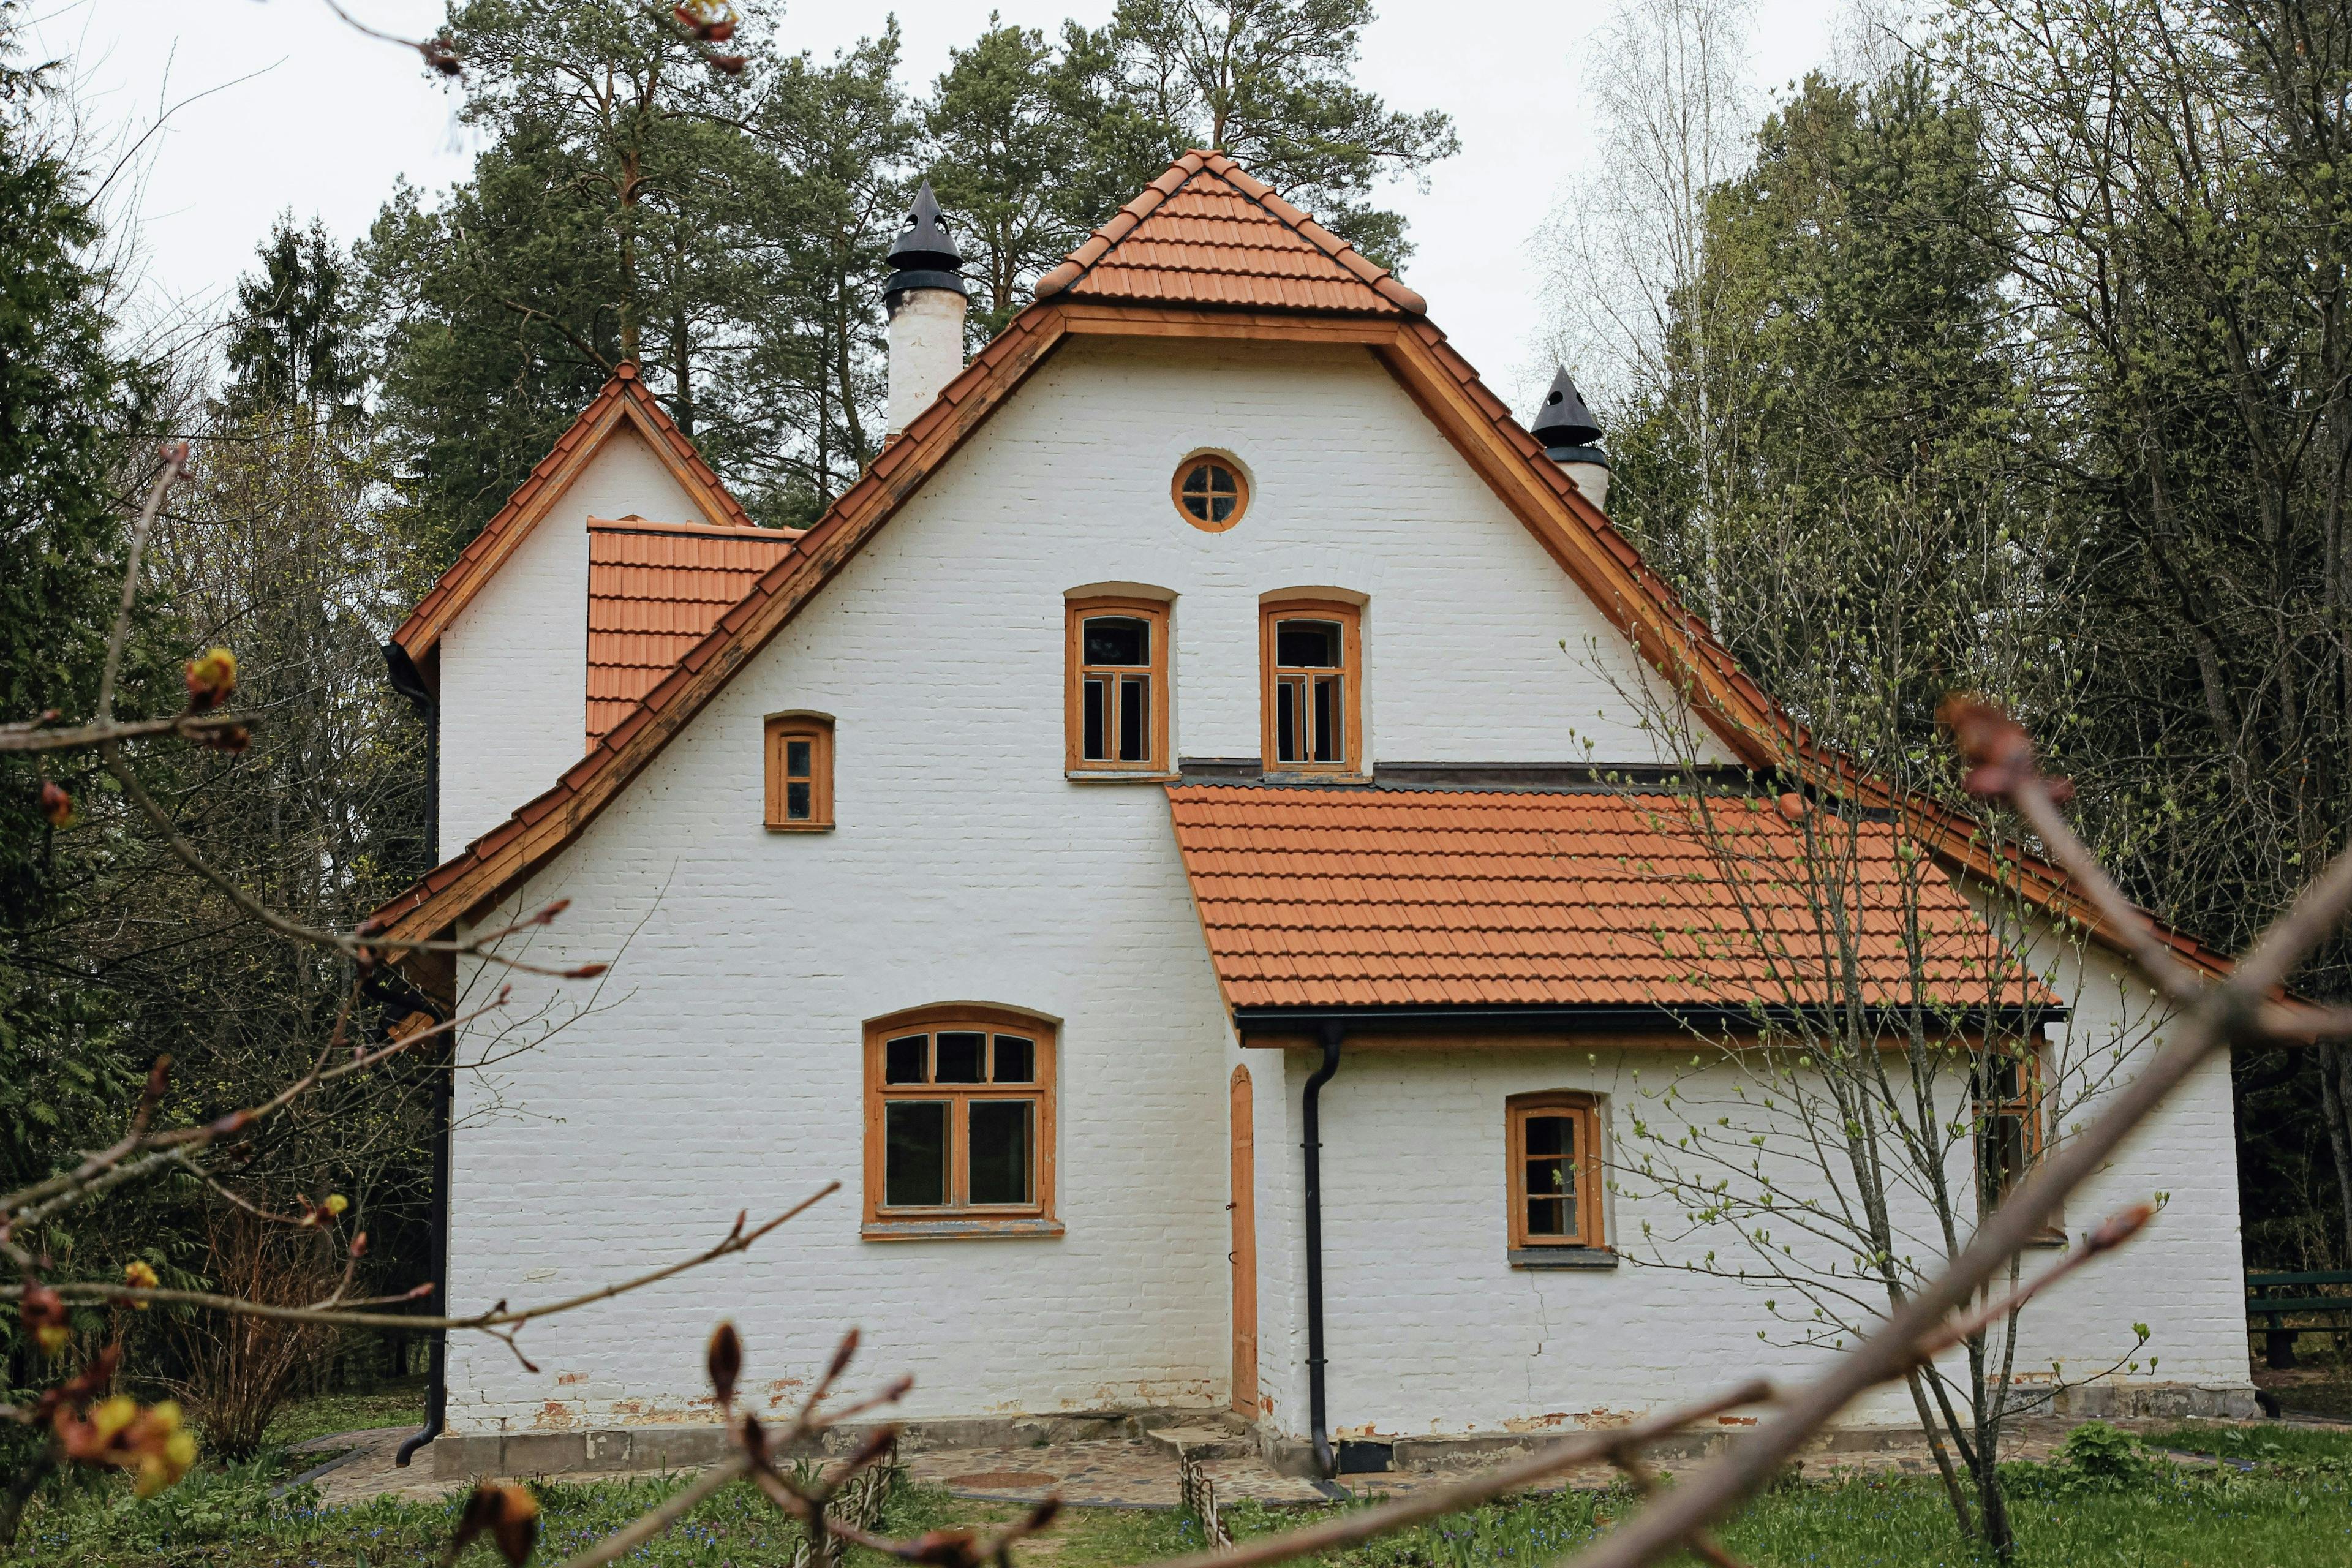 Haus mit Spitzdach im Grünen